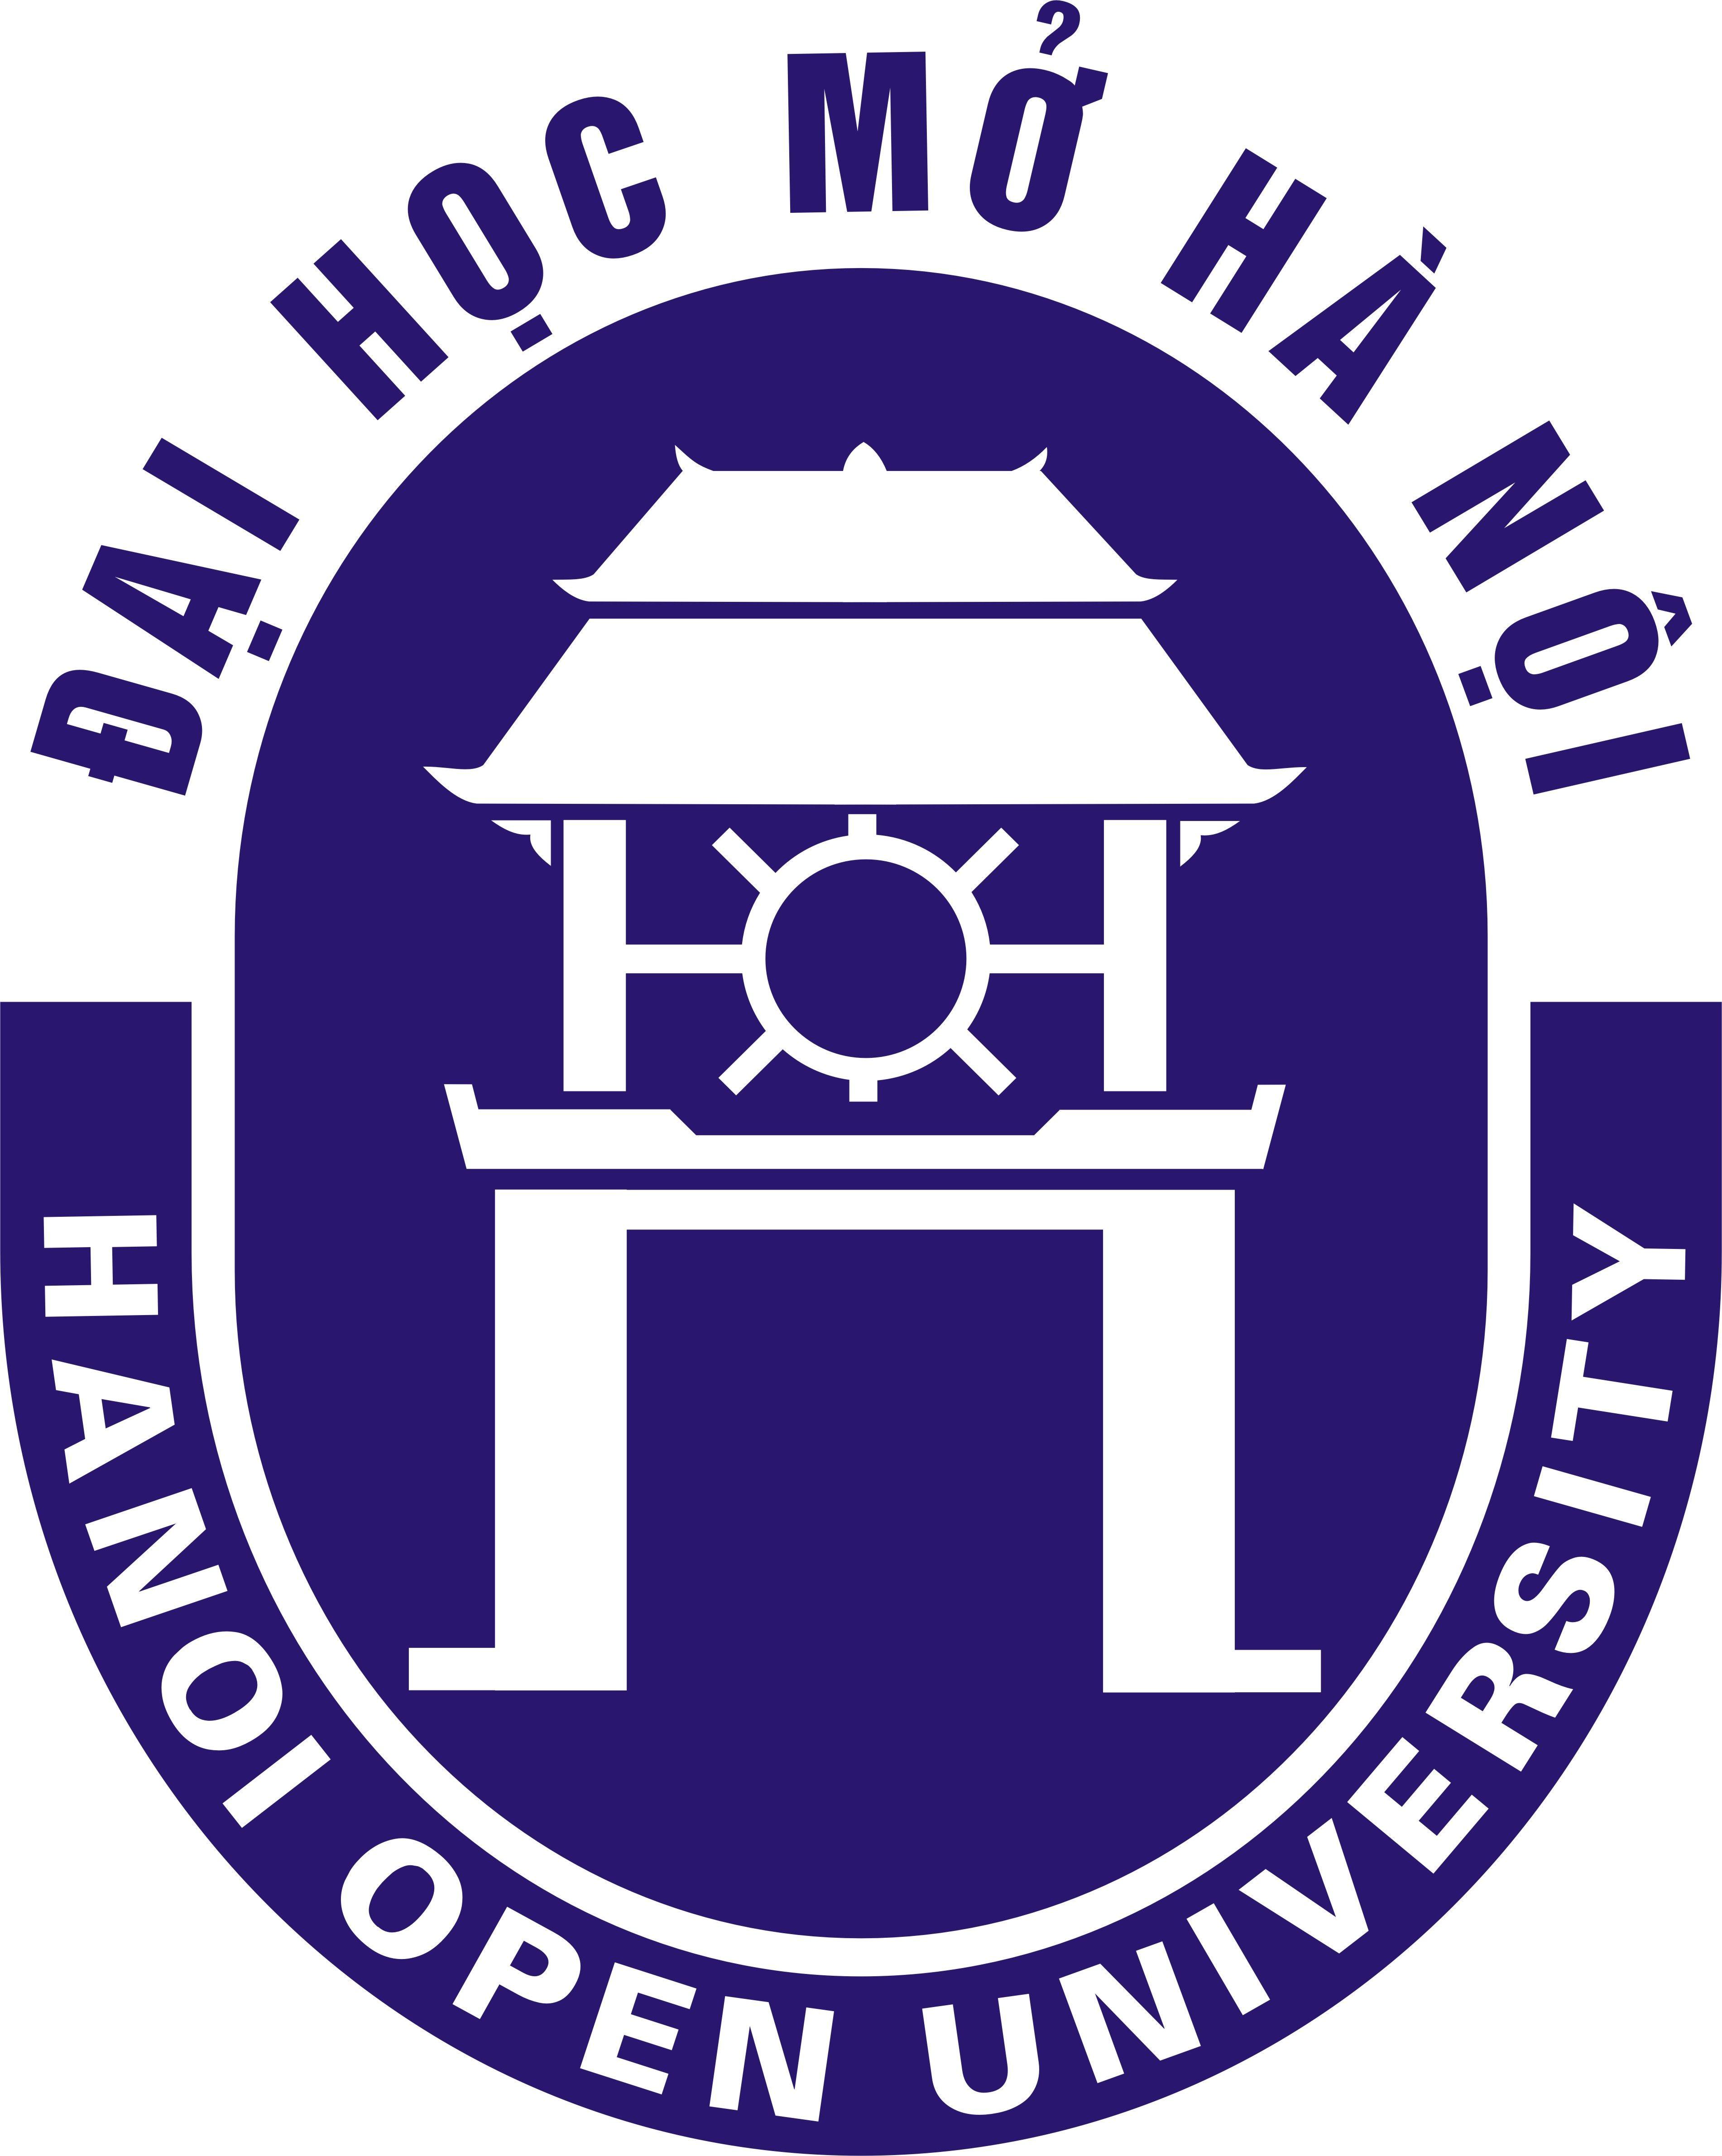 Hou Logo - Hou Logo - 2019 Logo Ideas & Designs